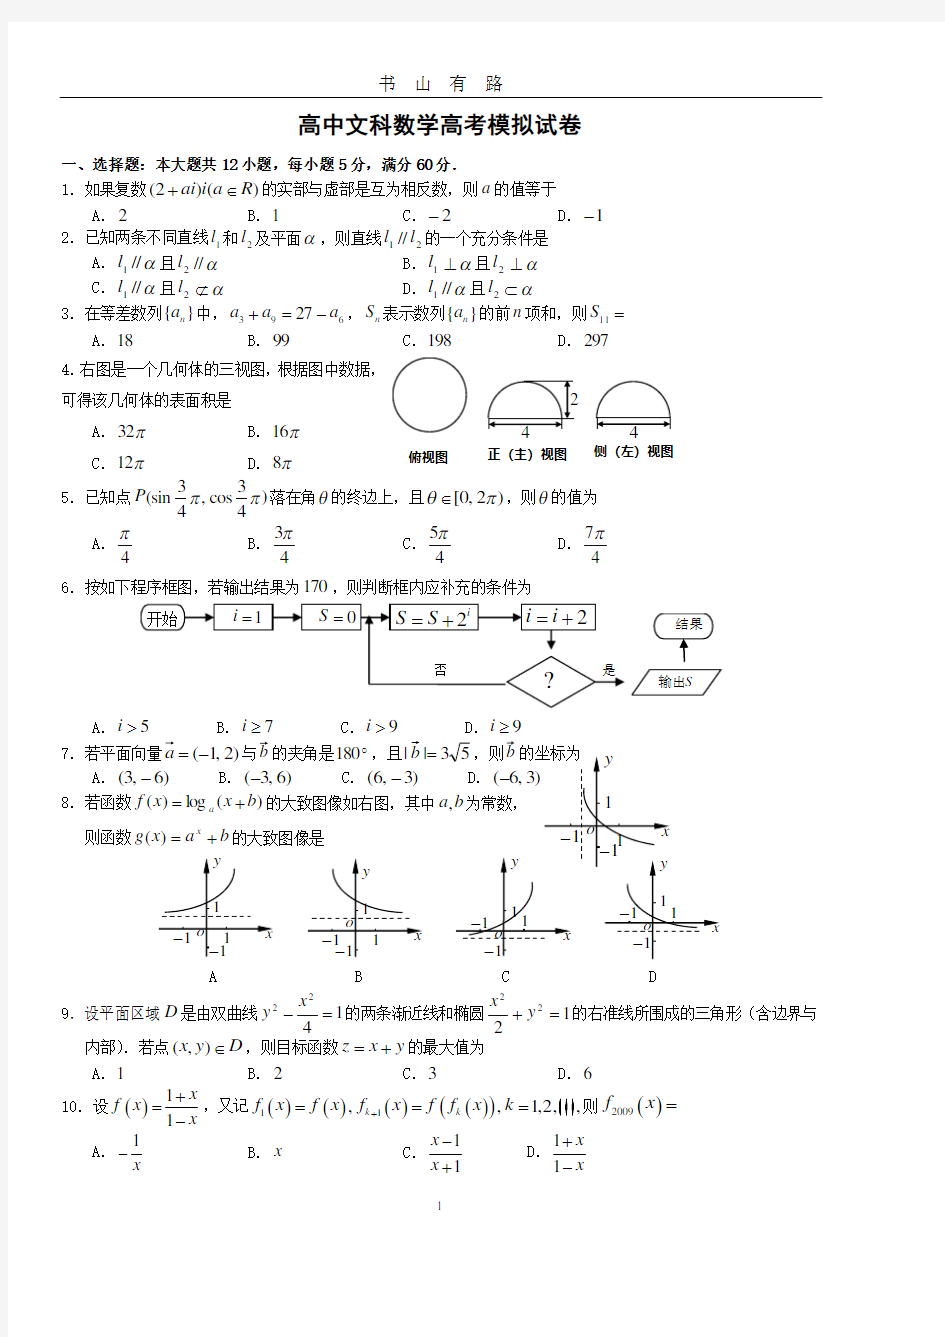 高中文科数学高考模拟试卷(含答案)PDF.pdf